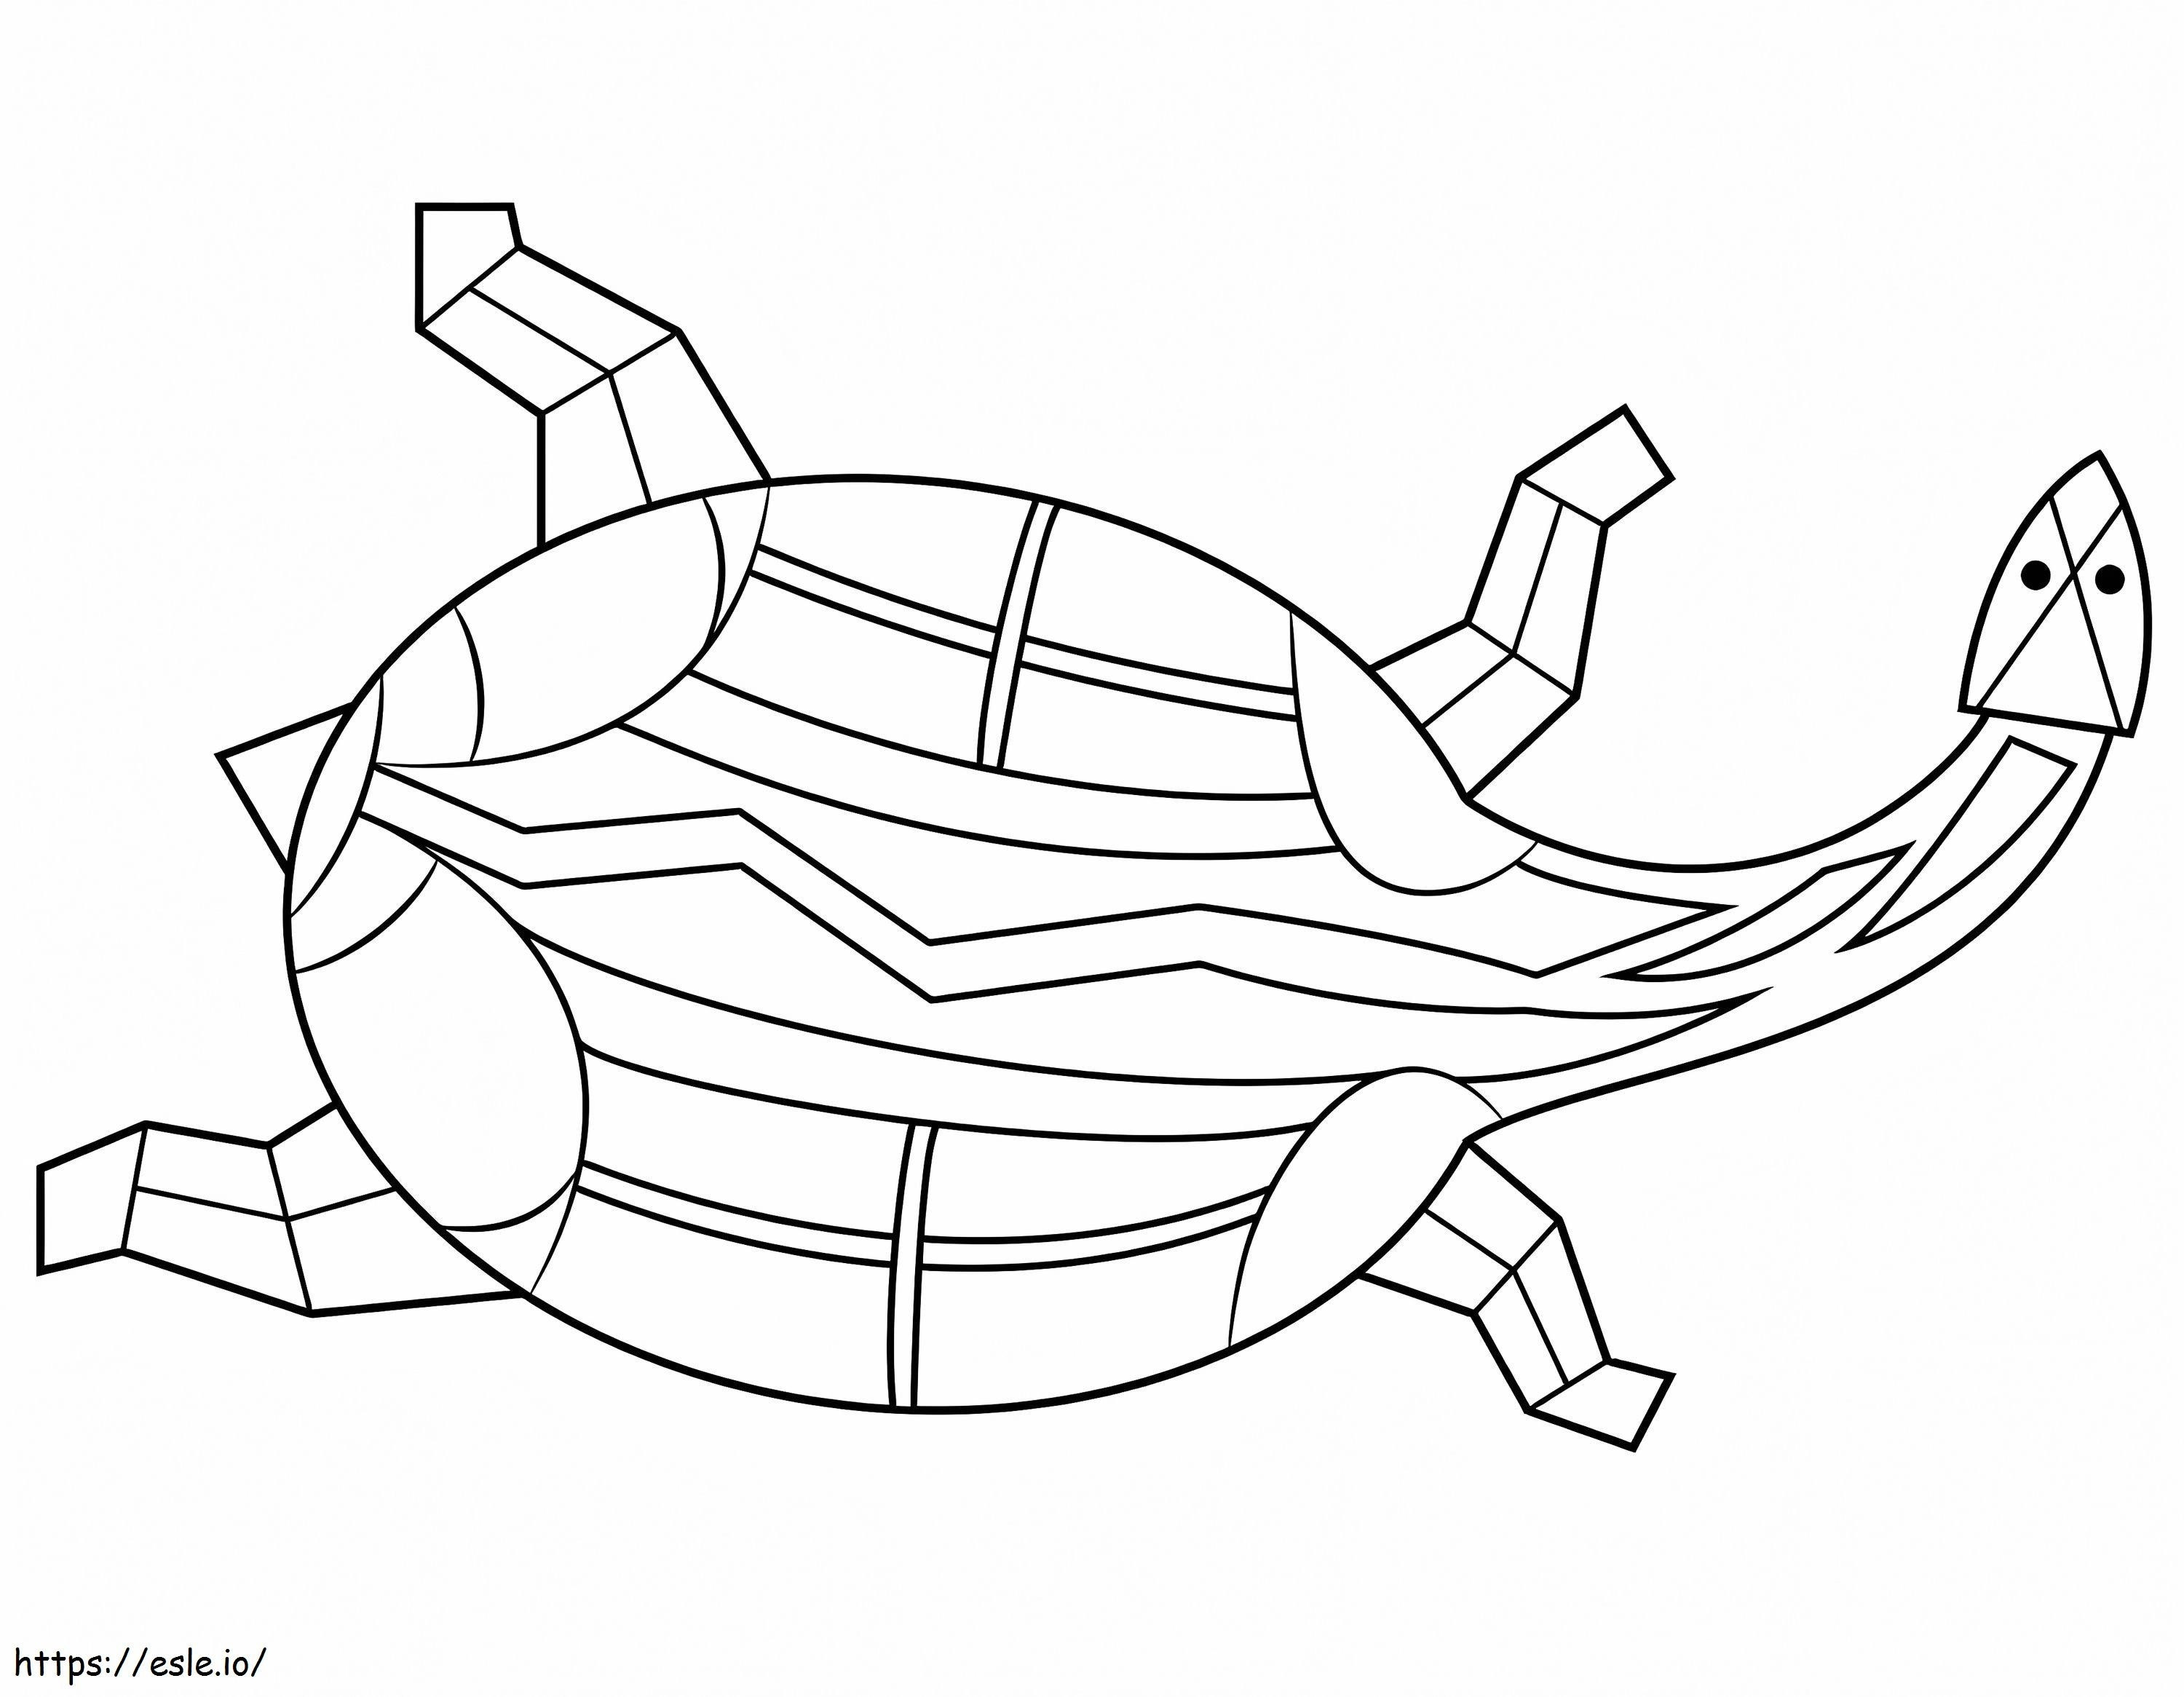 Kaplumbağanın Aborjin Tablosu boyama